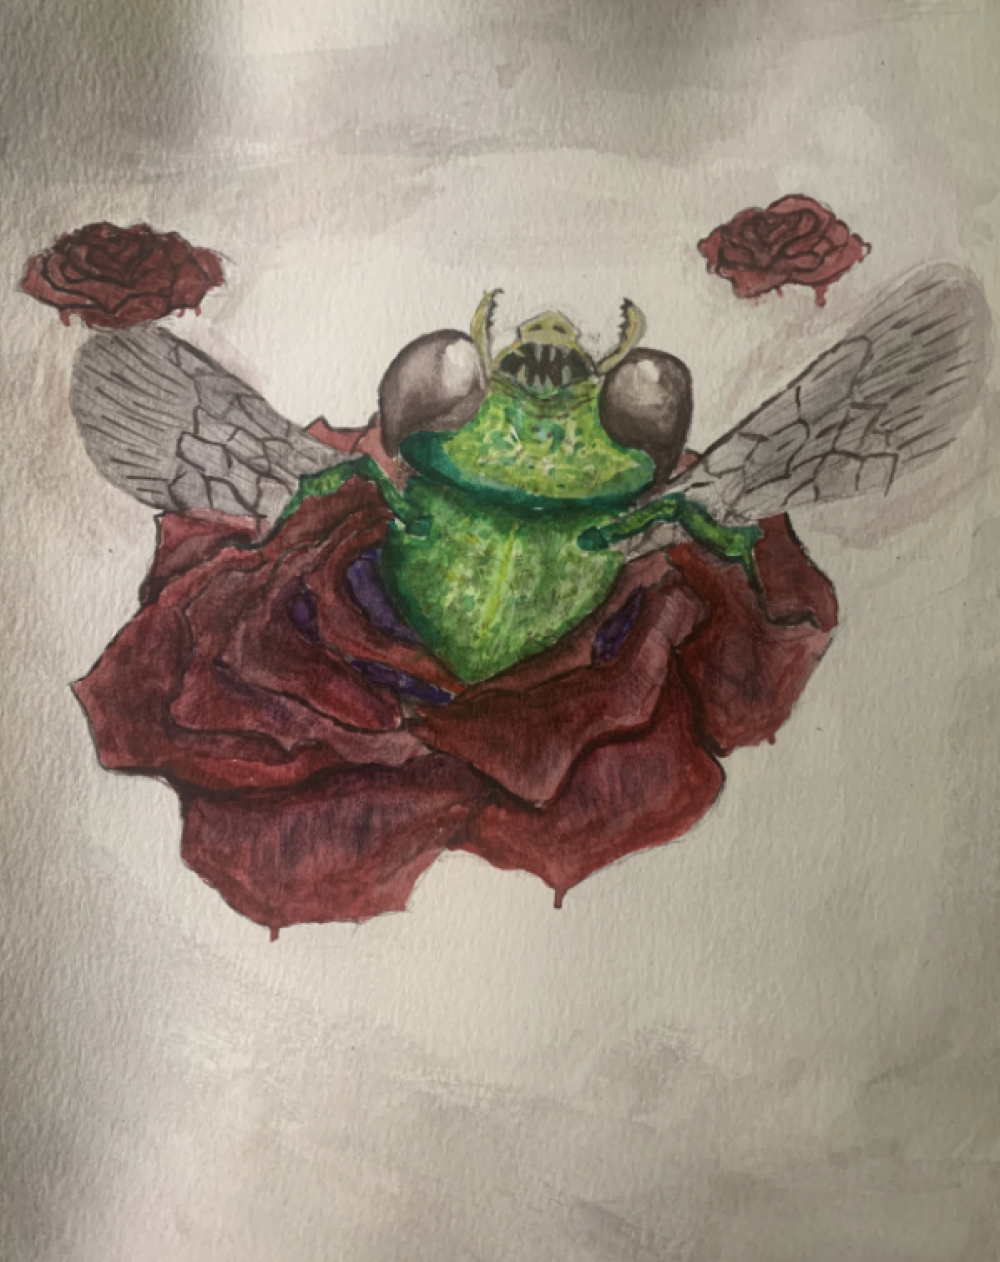 17. Tyler Tran, “Undead Sweat Bee,” 2022, Watercolor on paper